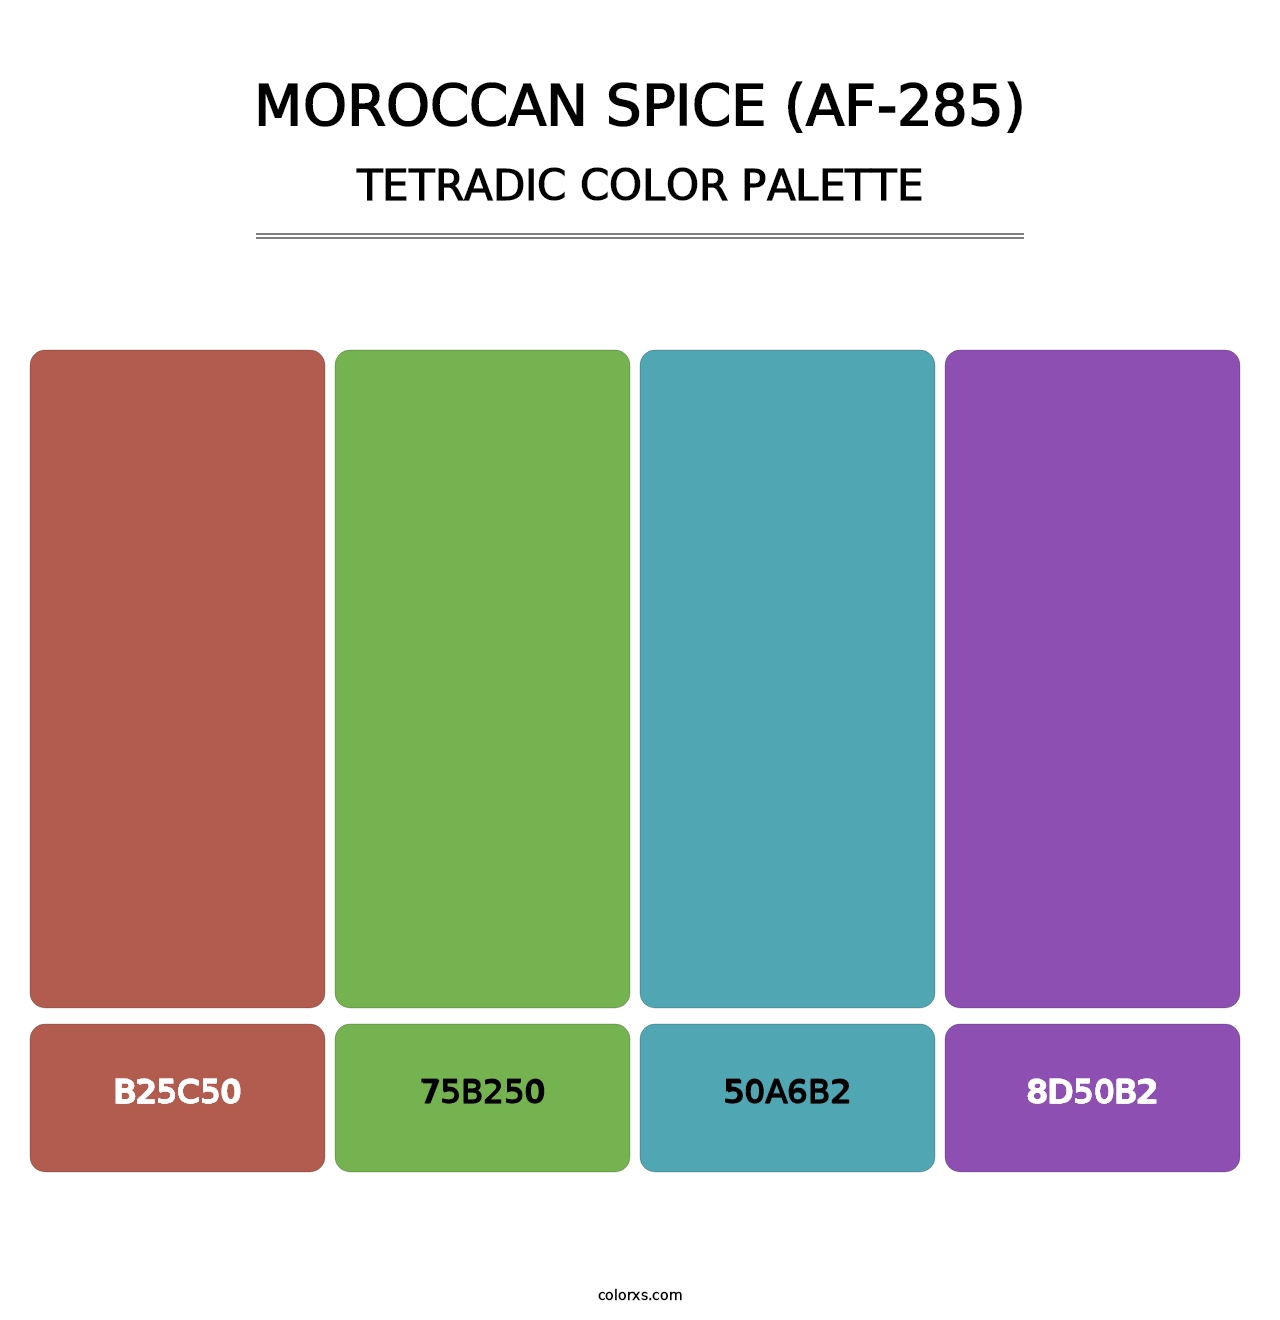 Moroccan Spice (AF-285) - Tetradic Color Palette